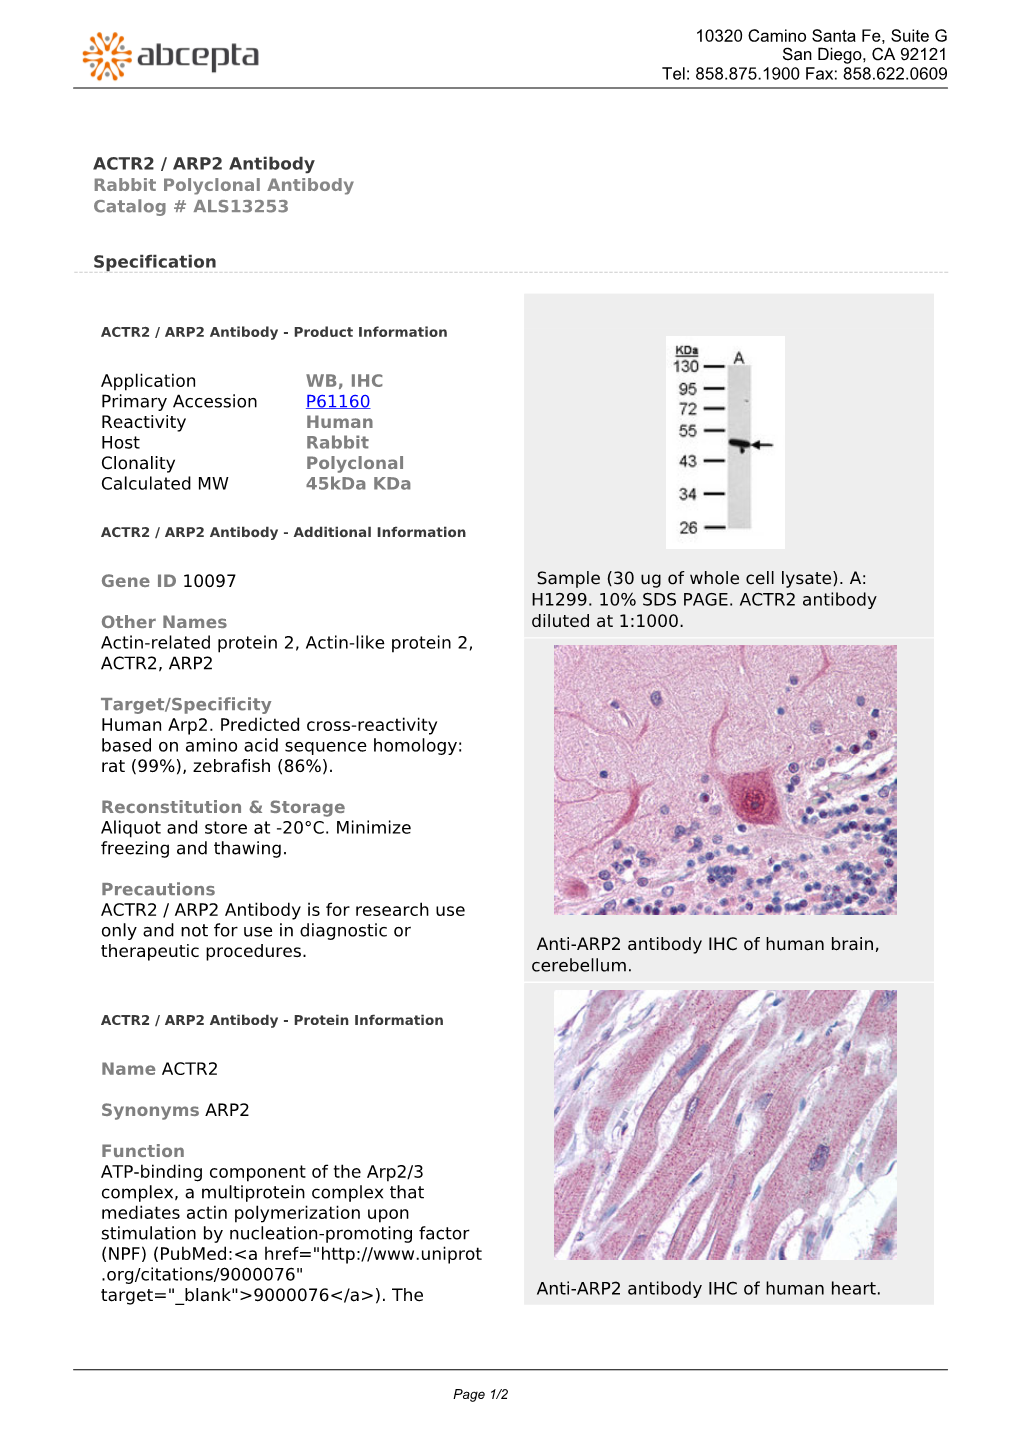 ACTR2 / ARP2 Antibody Rabbit Polyclonal Antibody Catalog # ALS13253